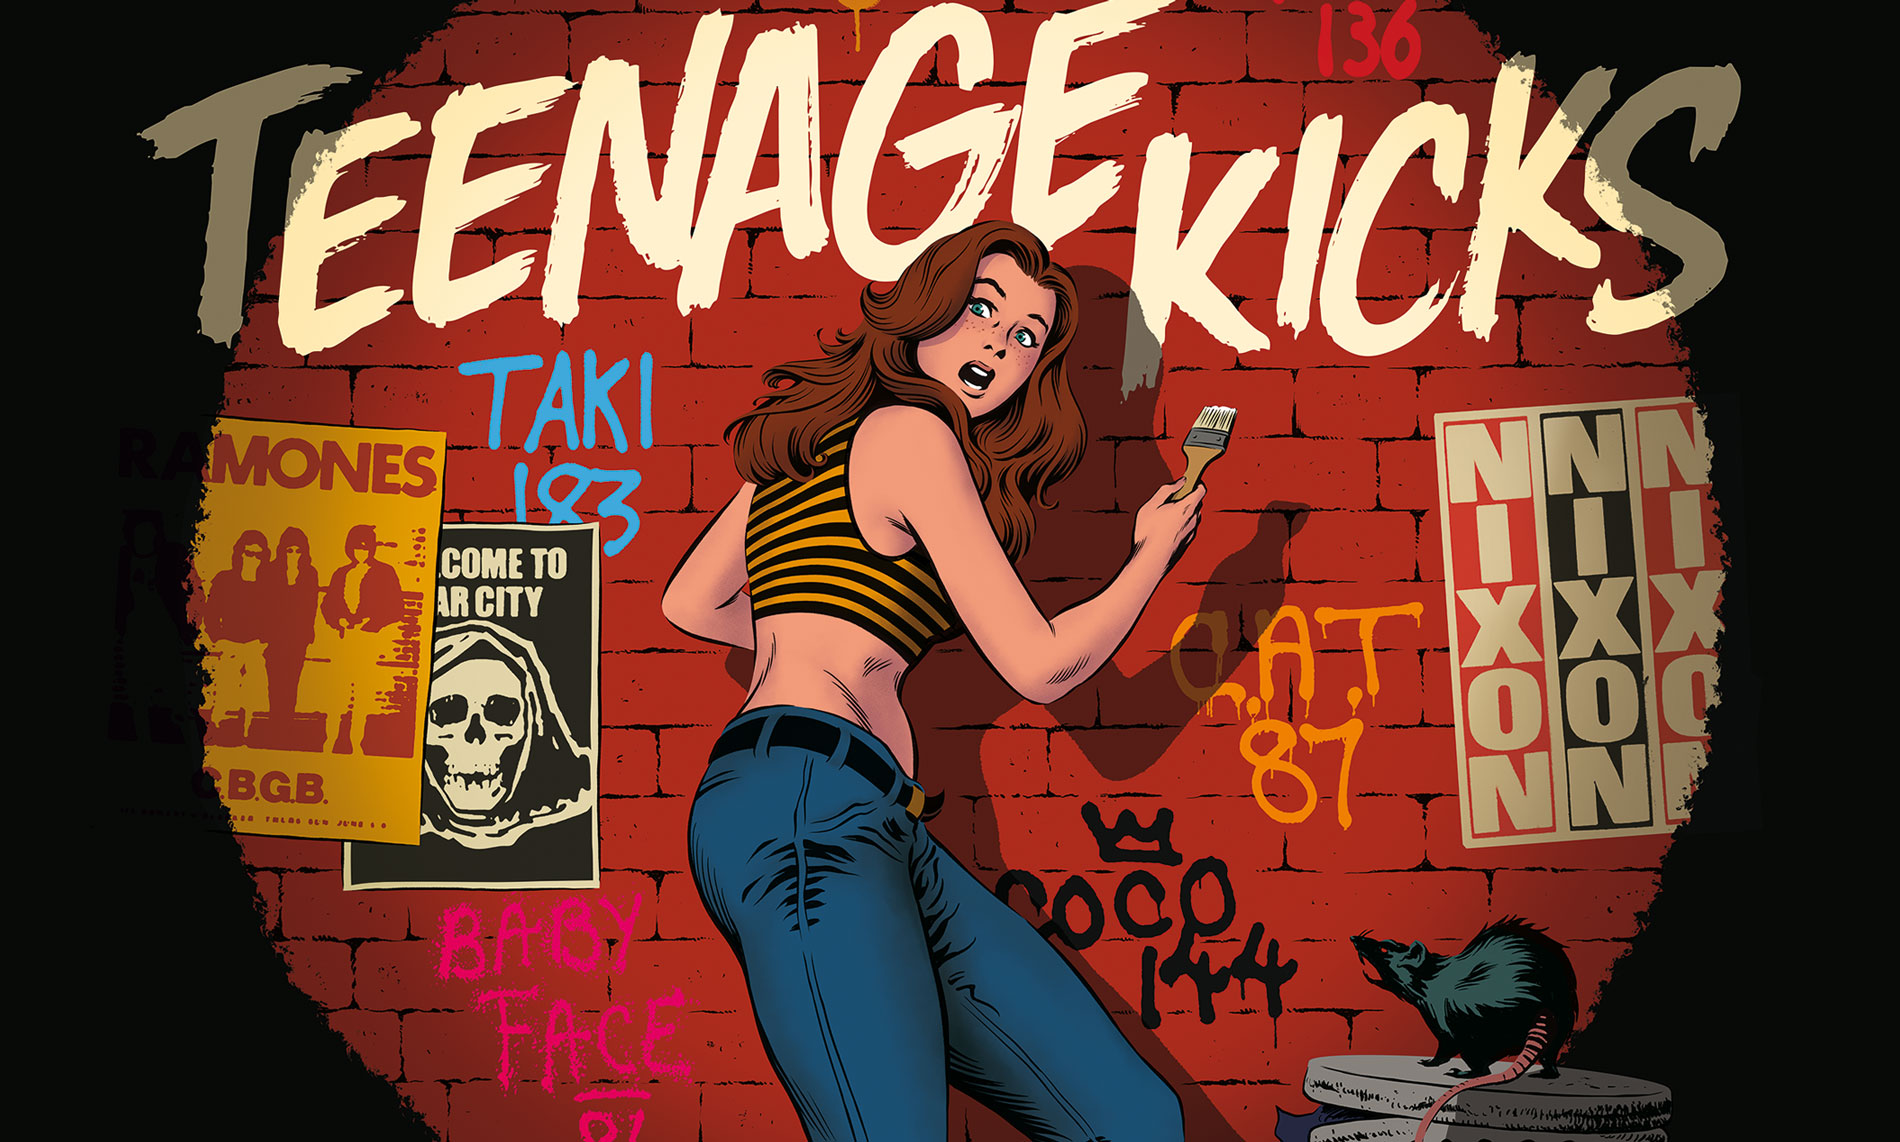 Ivan-Rock-Teenage-Kicks-Biennale-2023-